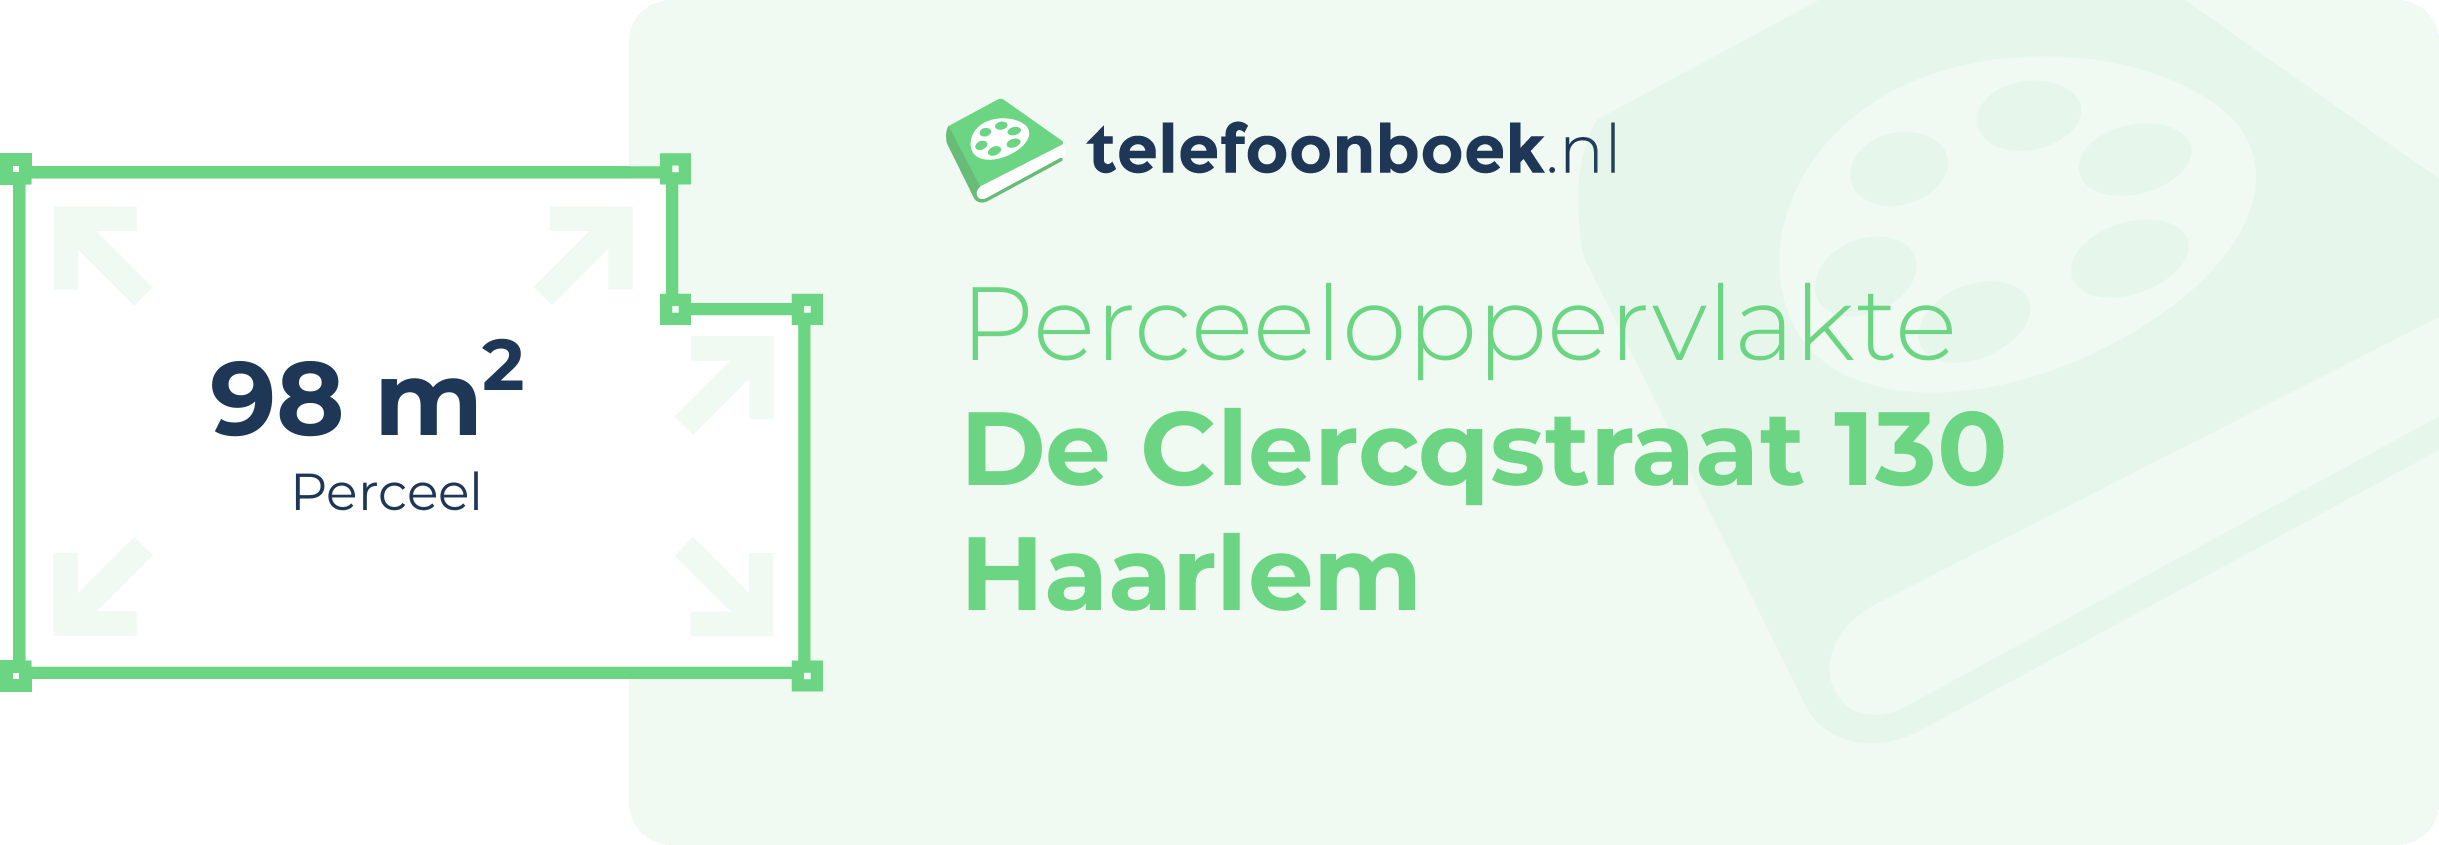 Perceeloppervlakte De Clercqstraat 130 Haarlem